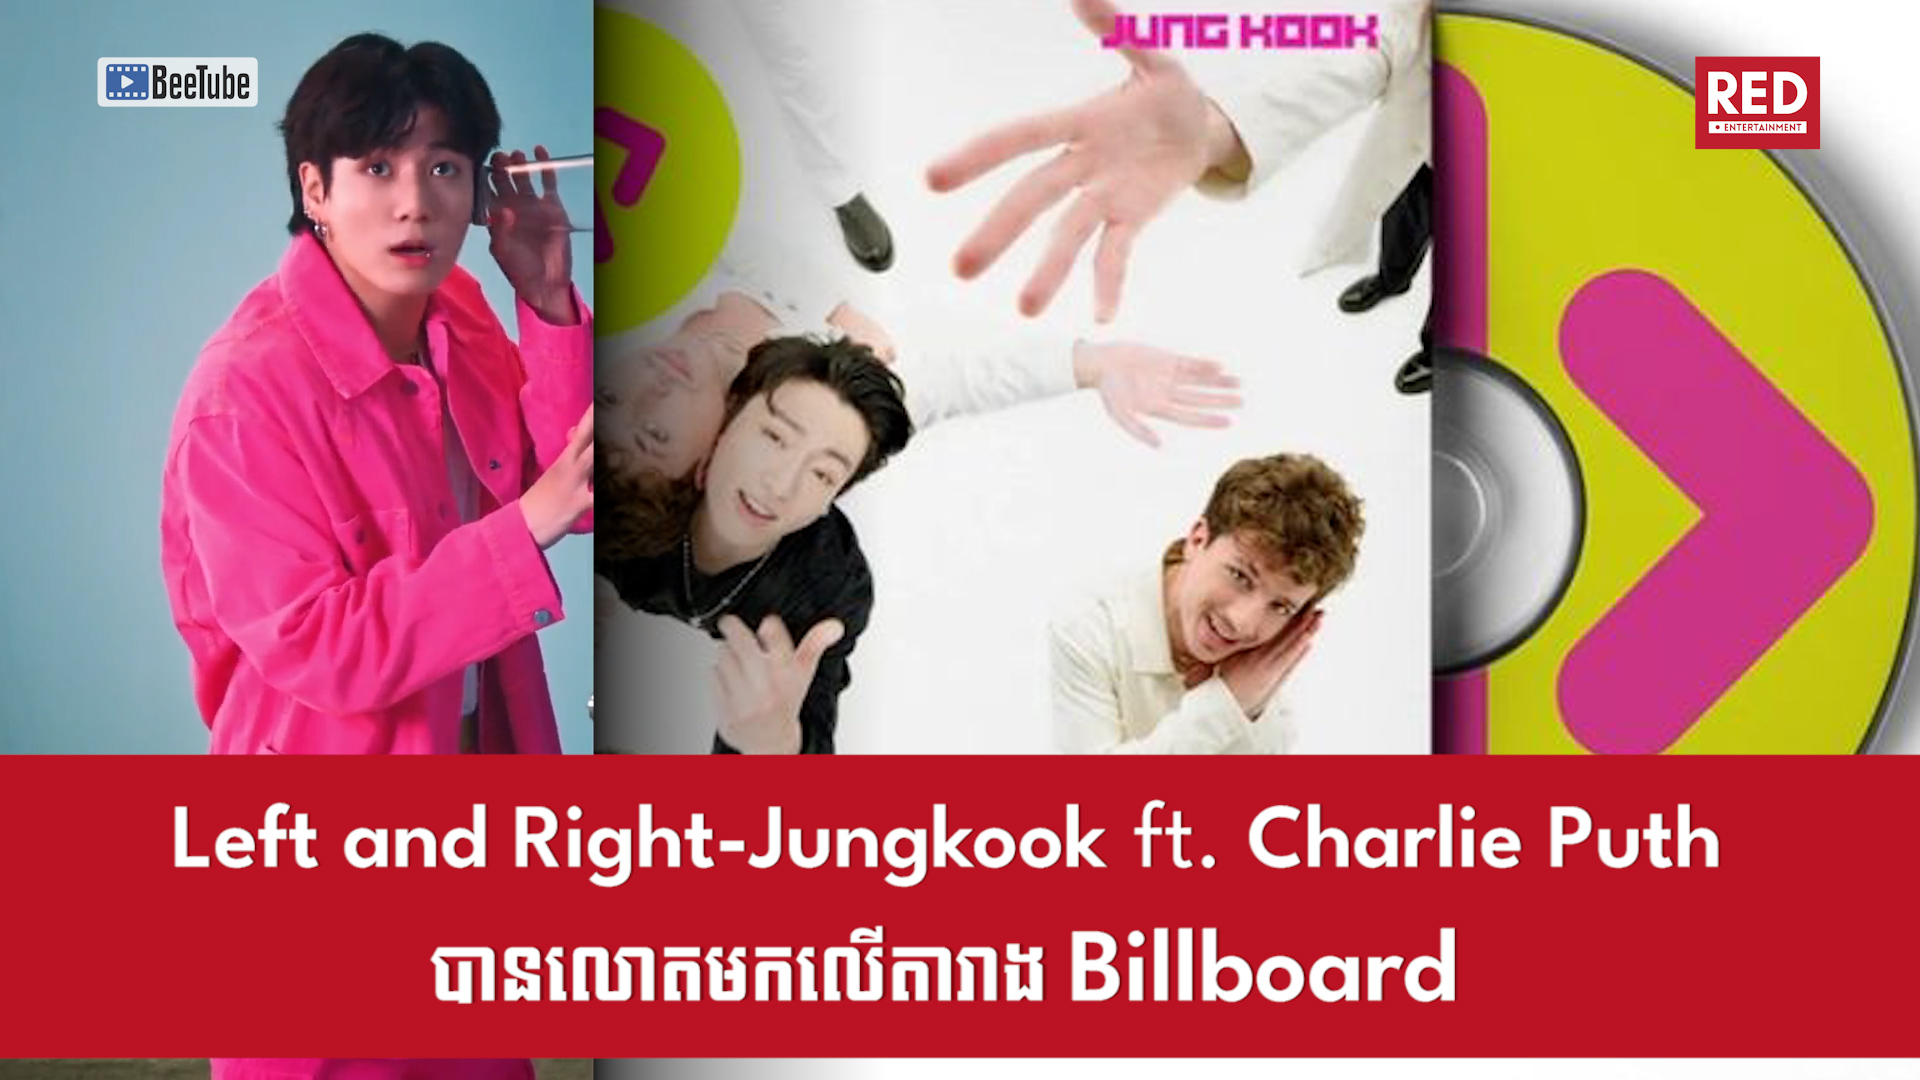 បទថ្មី Left and Right ដែលជាការសហការរវាង Jungkook និង Charlie Puth បានលោតមកលើតារាង Billboard ទោះបីជាមិនទាន់ចេញផ្សាយ